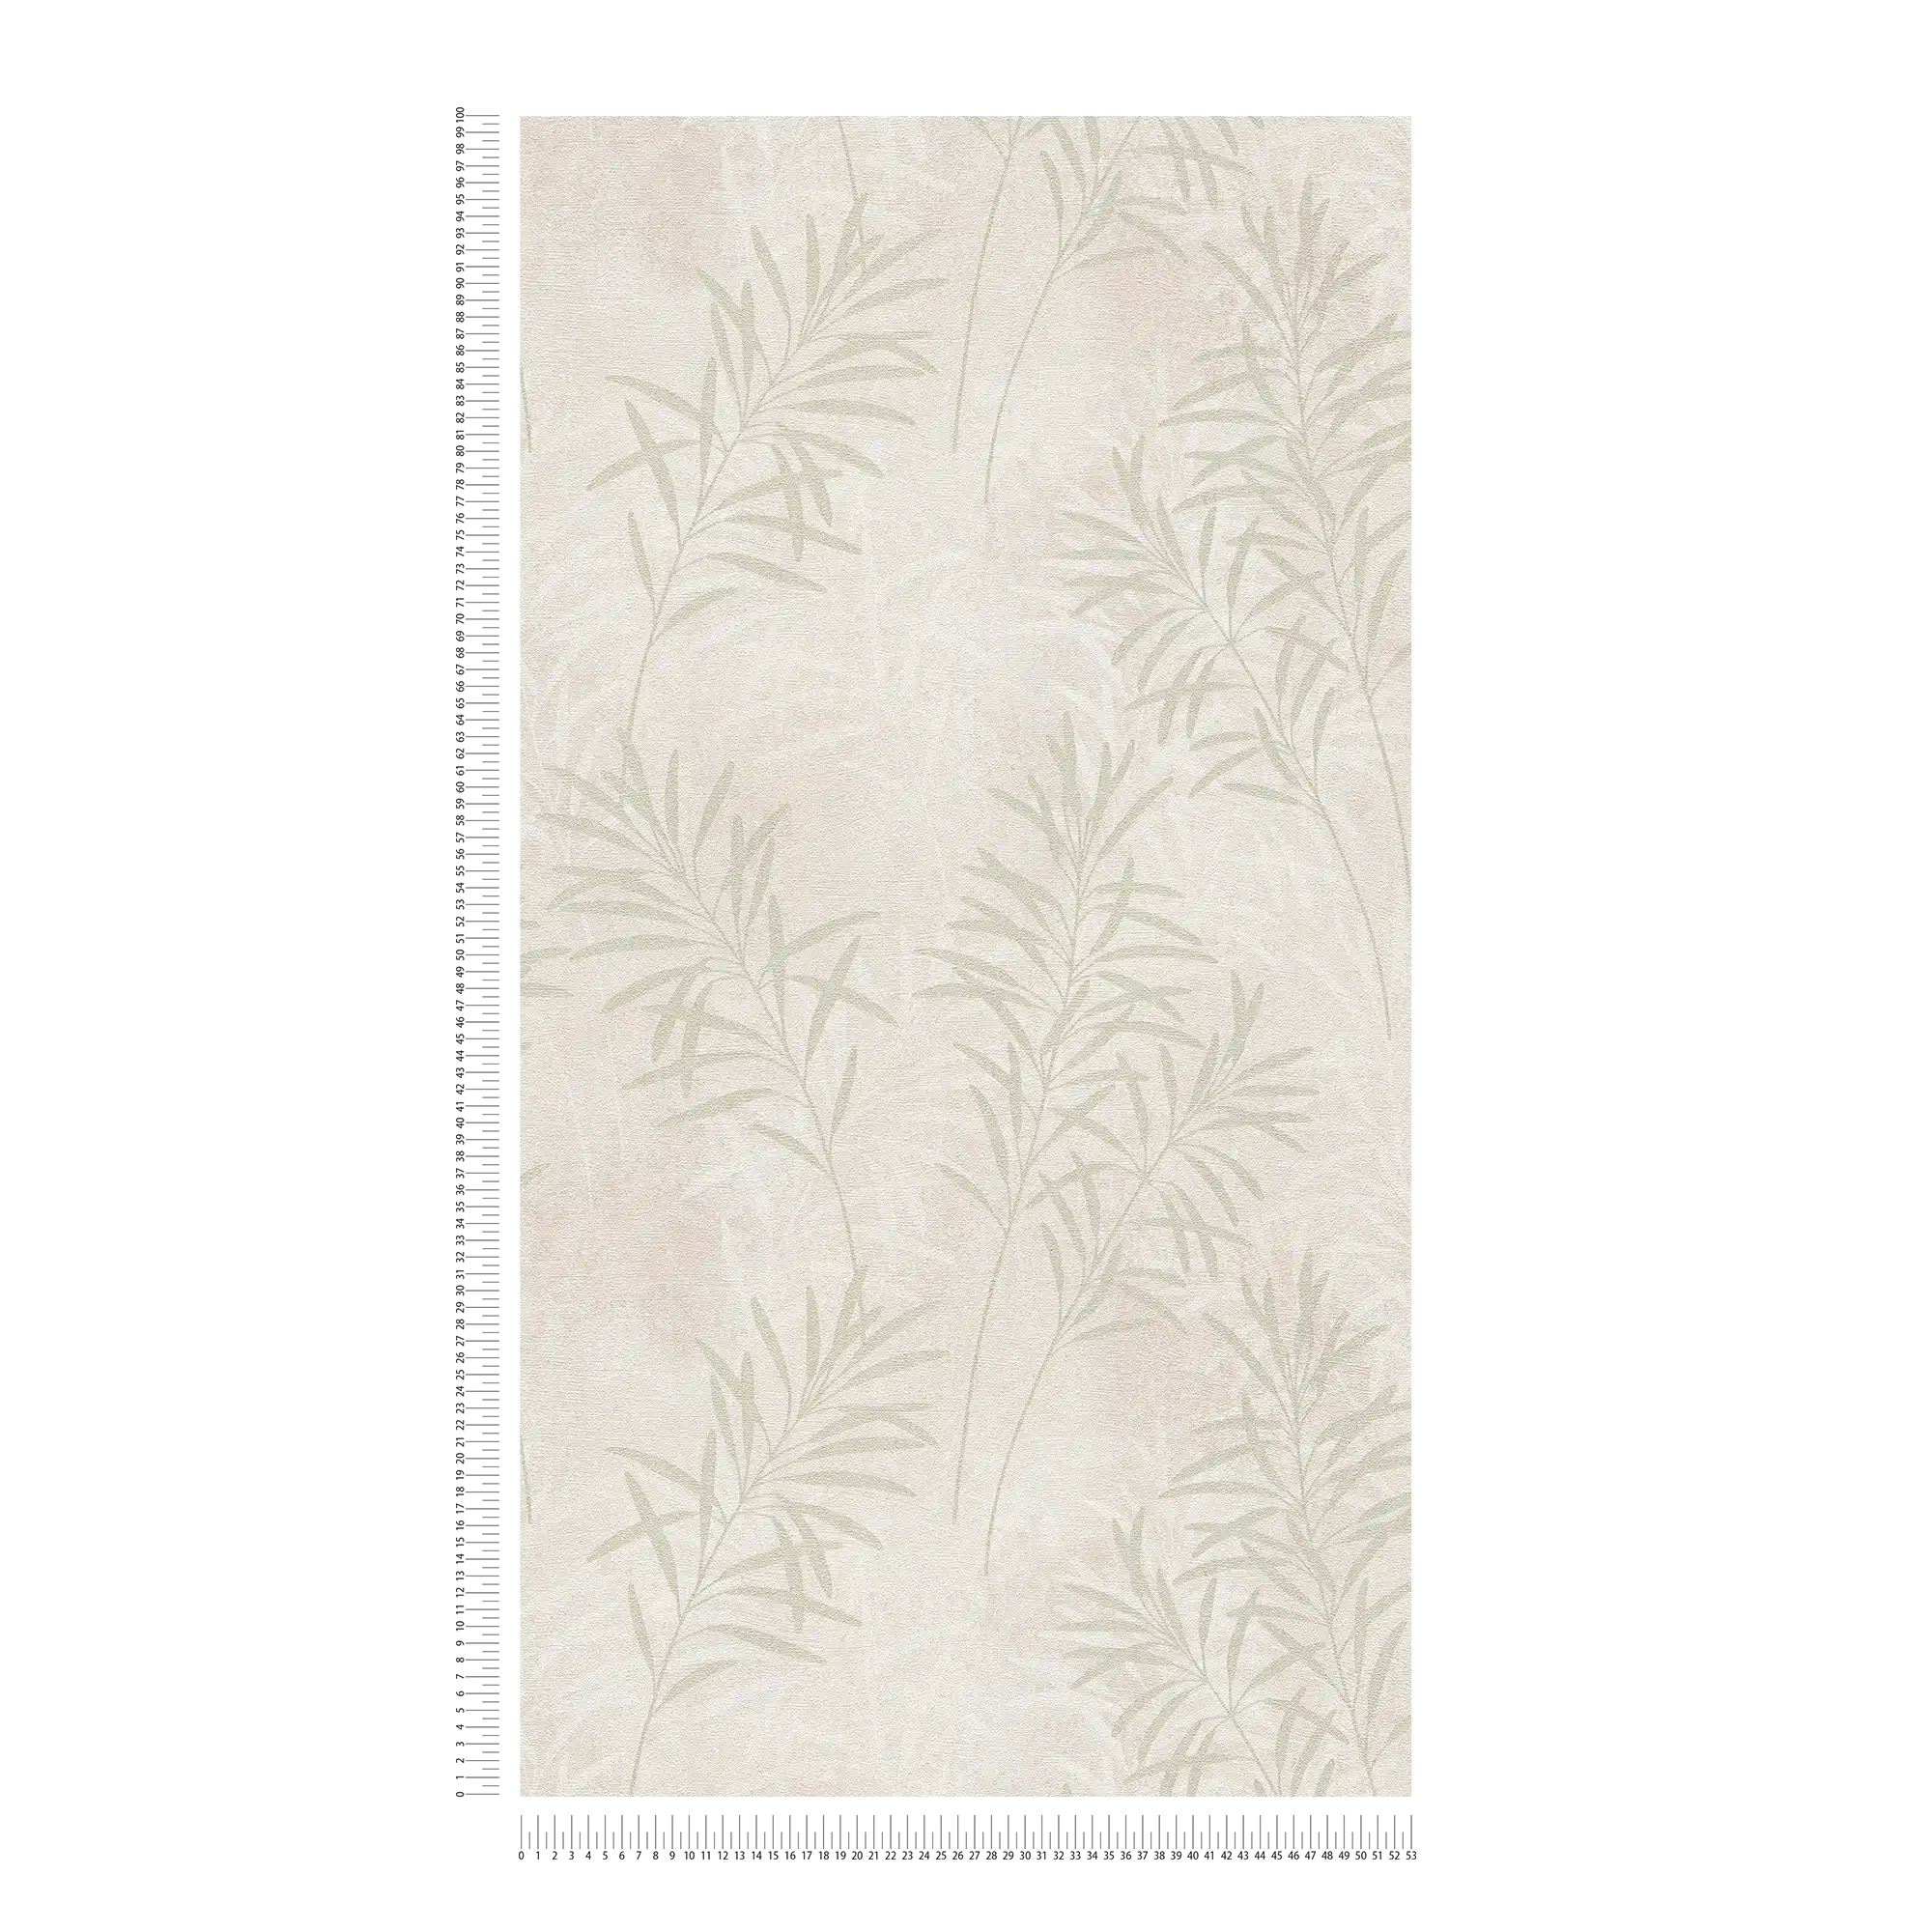             Carta da parati in tessuto non tessuto in stile scandinavo con erbe floreali - crema, verde, metallizzato
        